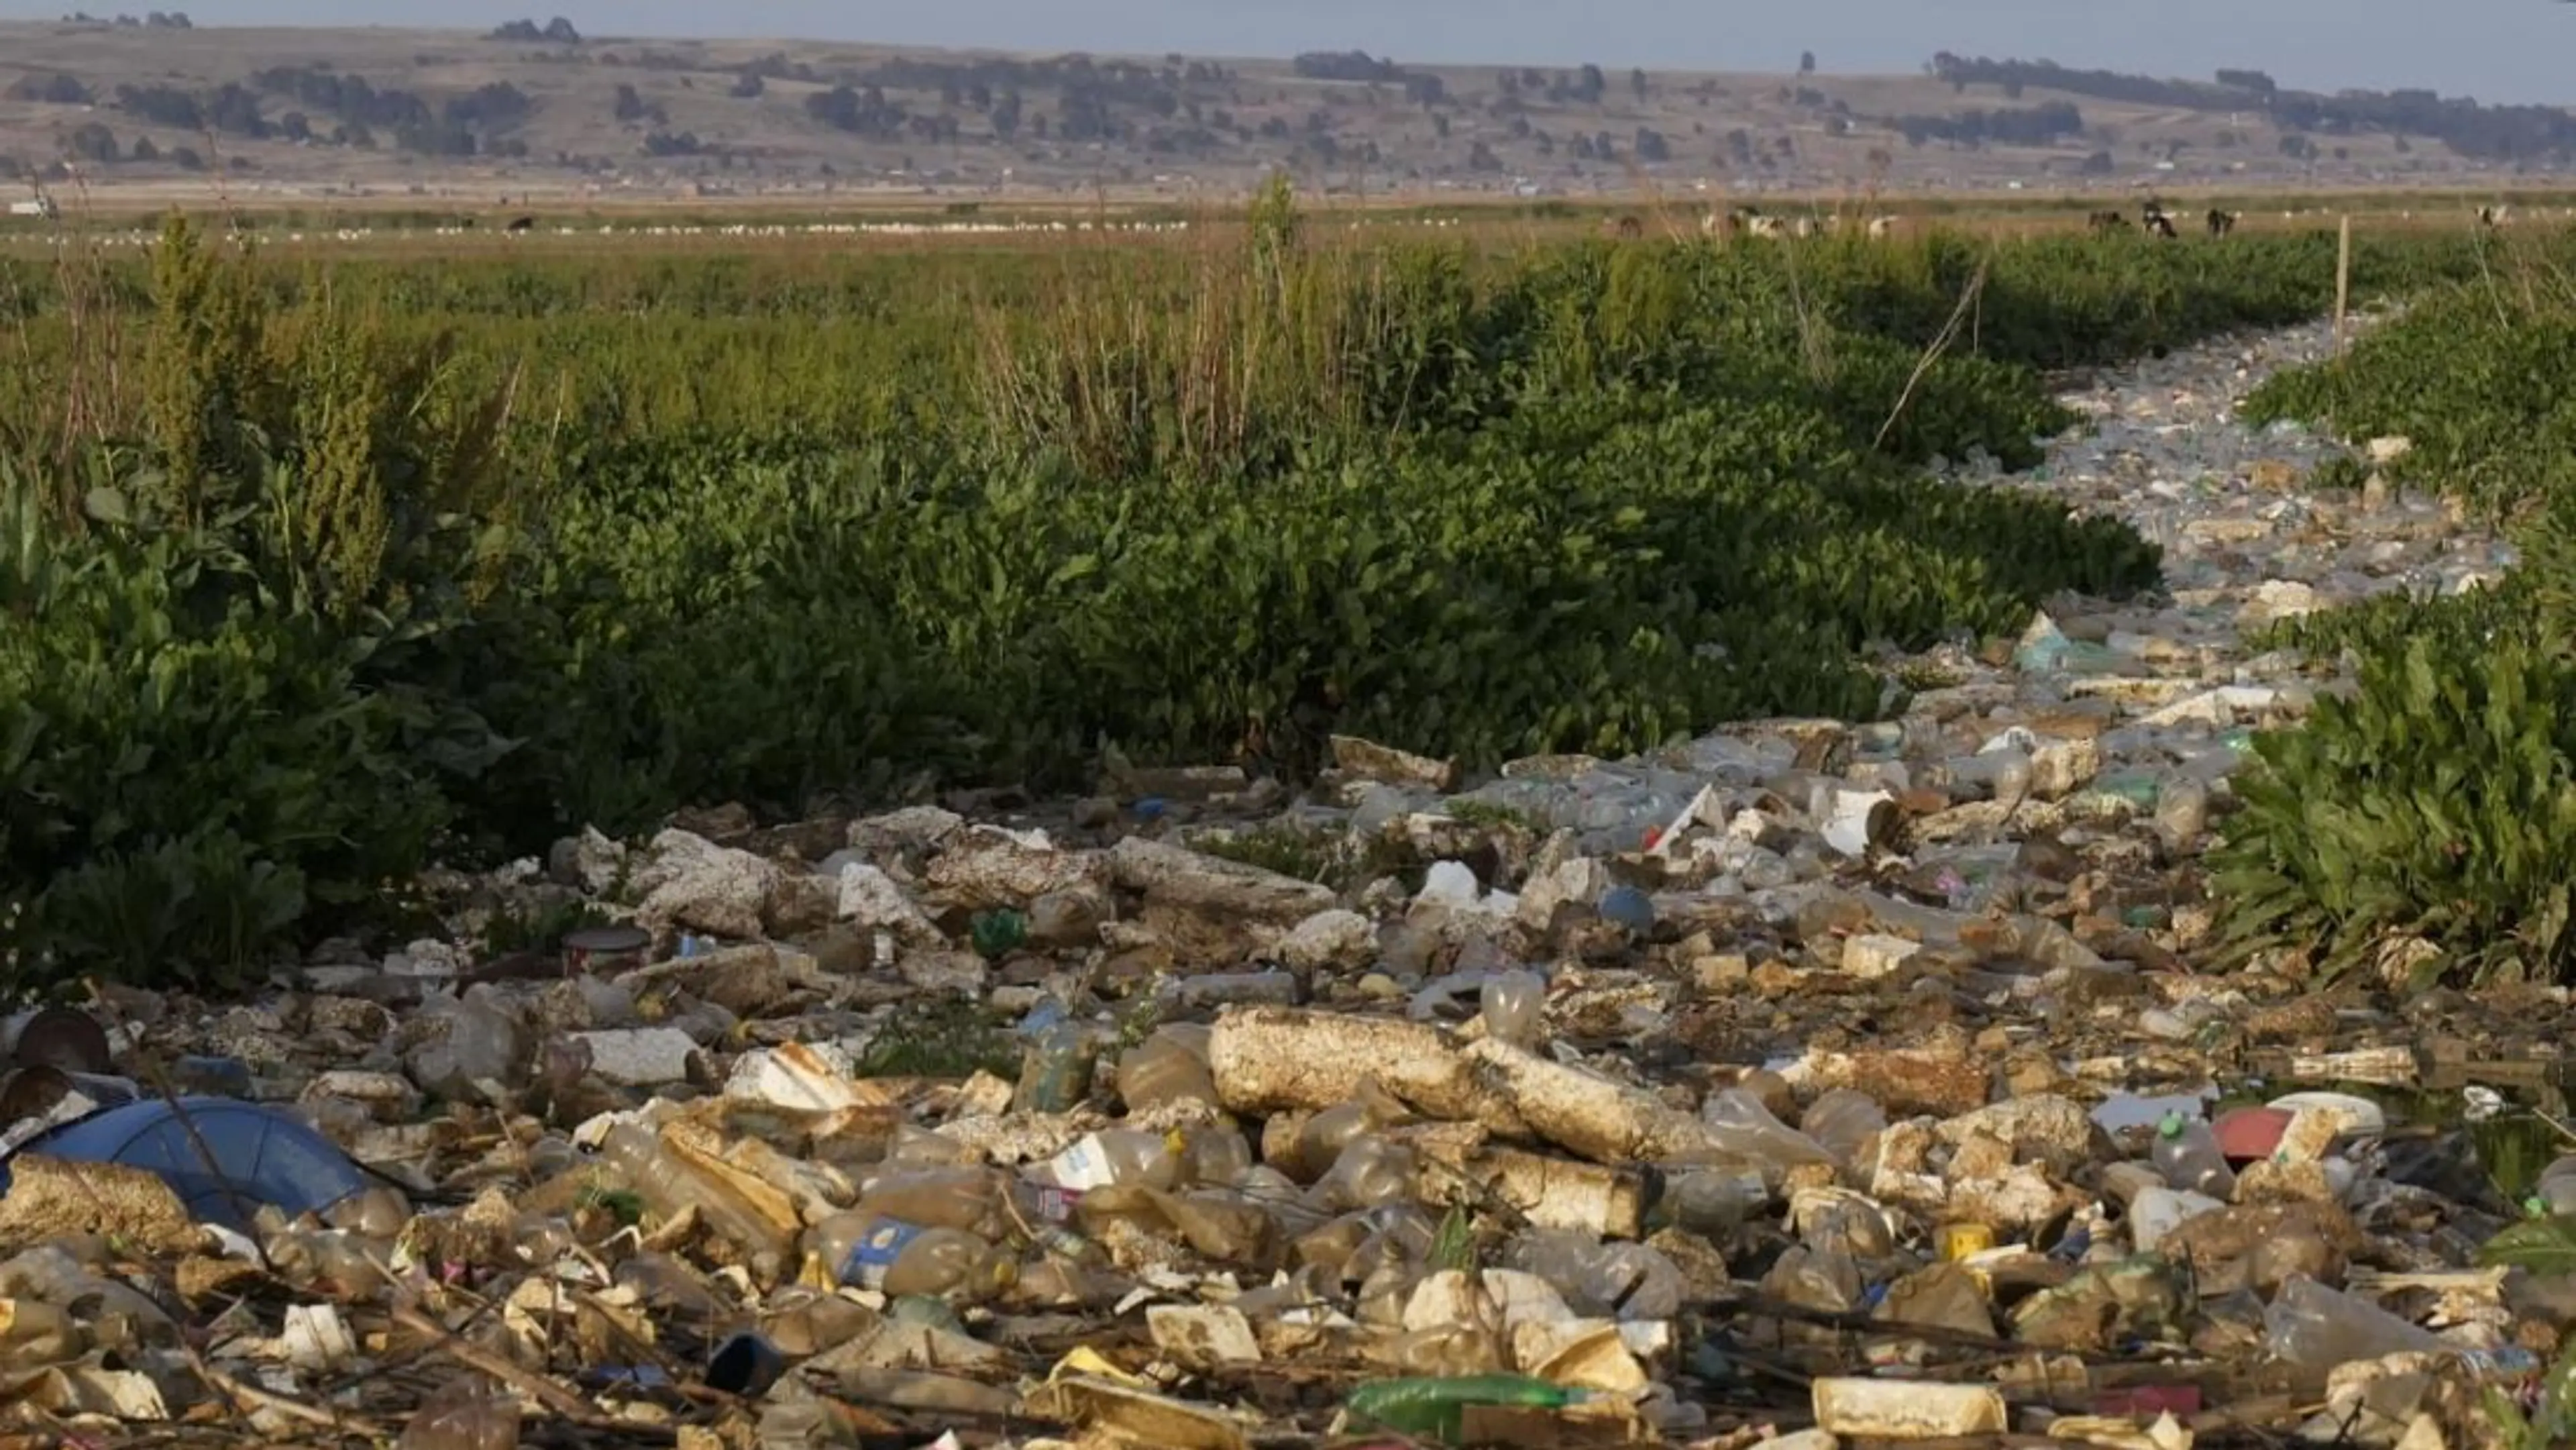 South America -Bolivia - plastic waste in the Katari River basin